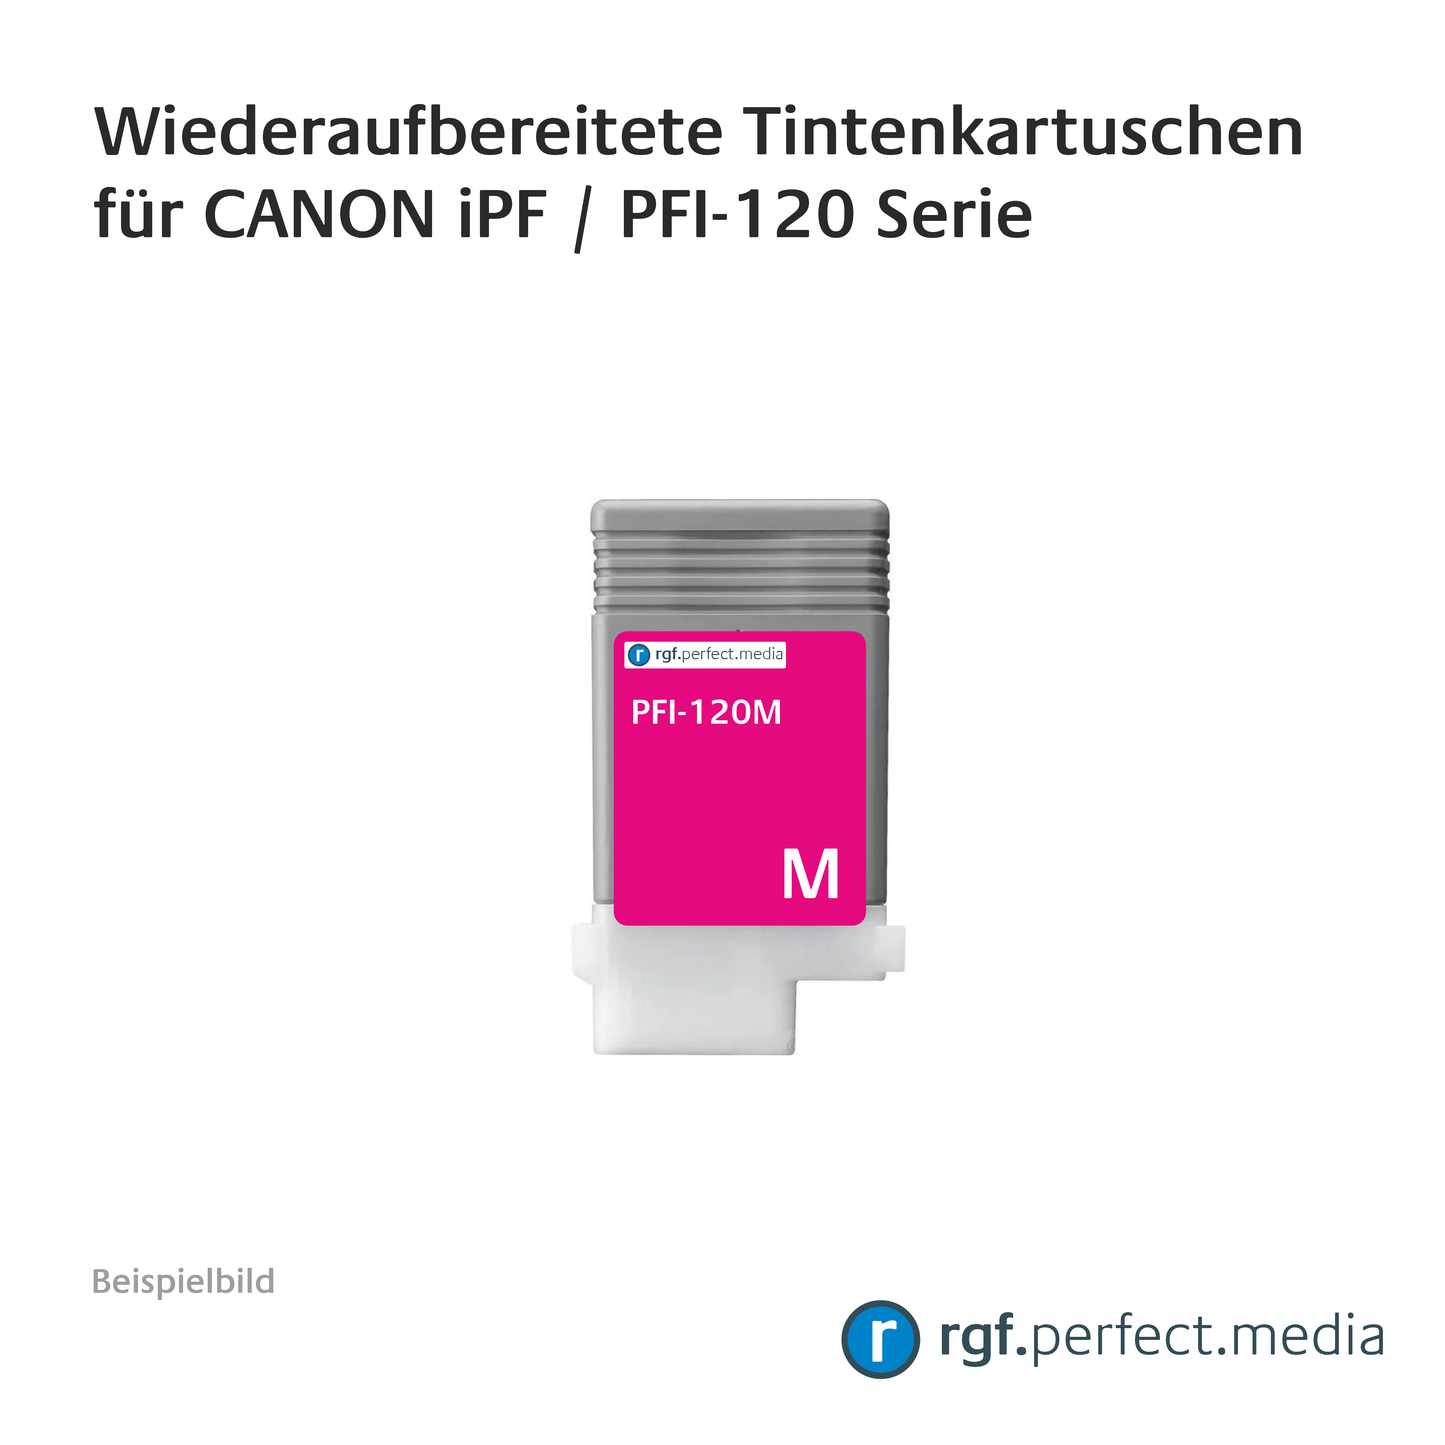 Wiederaufbereitete Tintenkartuschen No.120 Serie kompatibel für Canon iPF - Serie